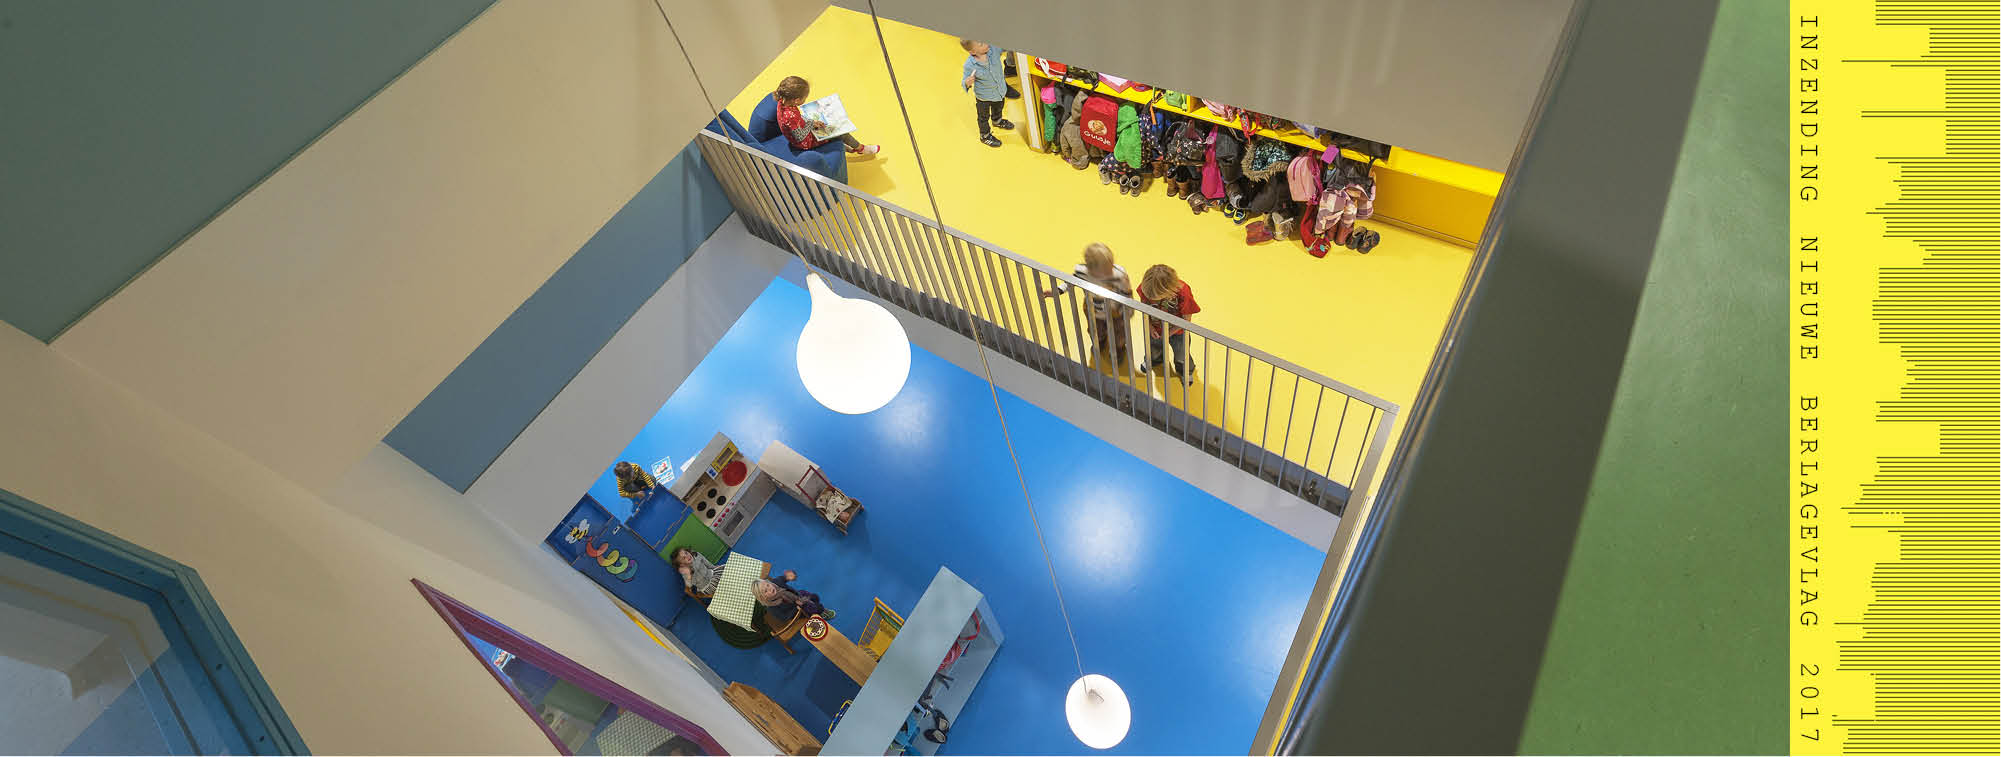 Montessorischolen Valkenbos ontwerp Atelier PRO